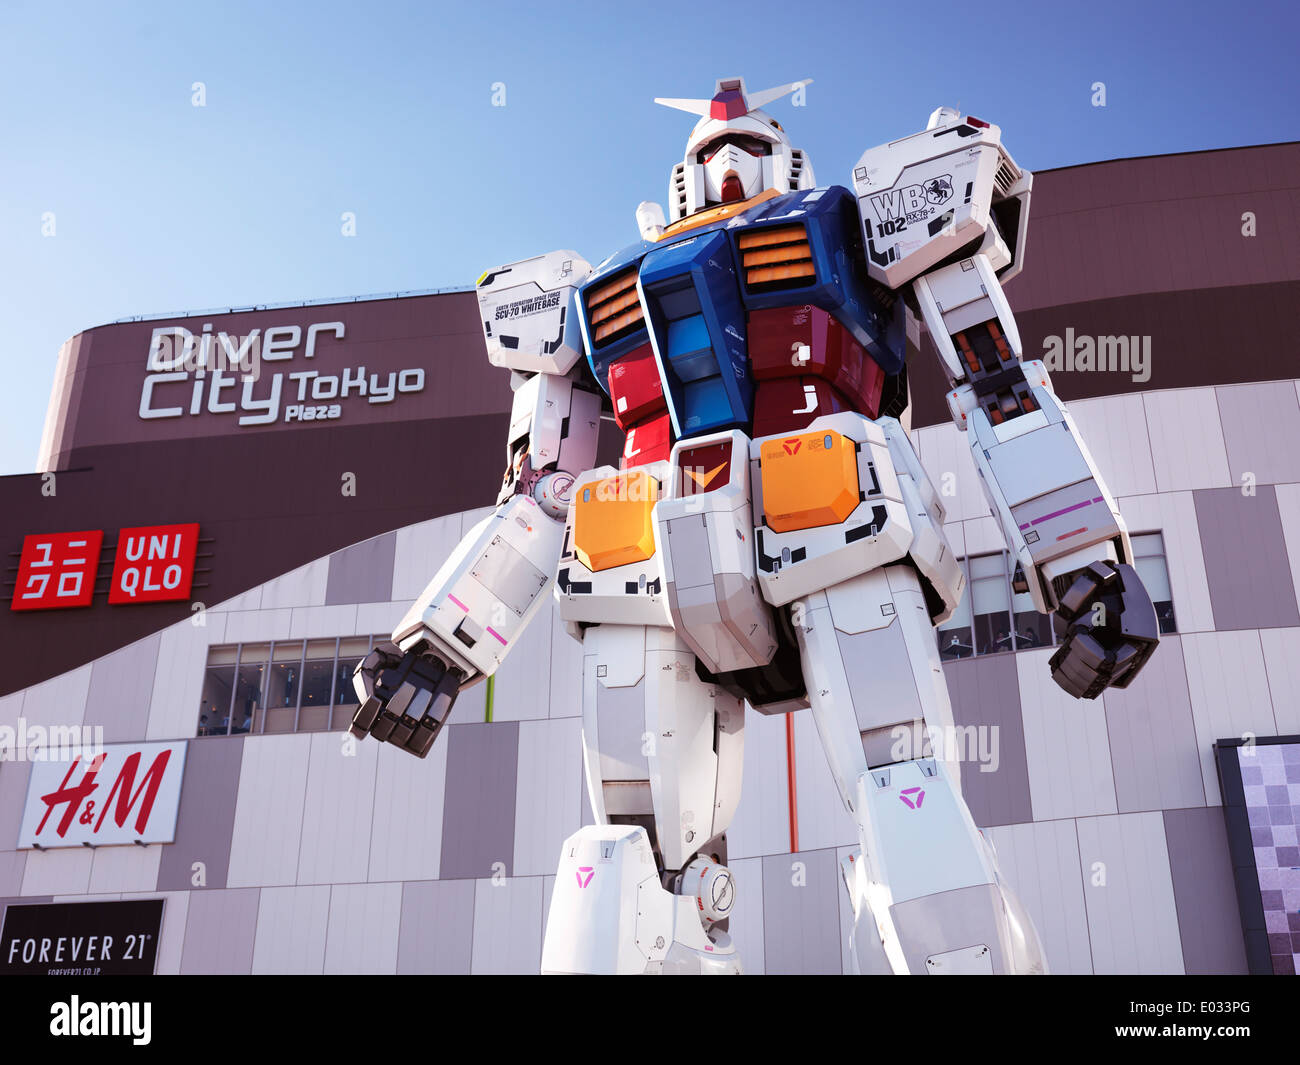 Licenza disponibile a MaximImages.com - Gundam RX-78-2 statua salvavita di fronte a Diver City, Odaiba, Tokyo, Giappone Foto Stock